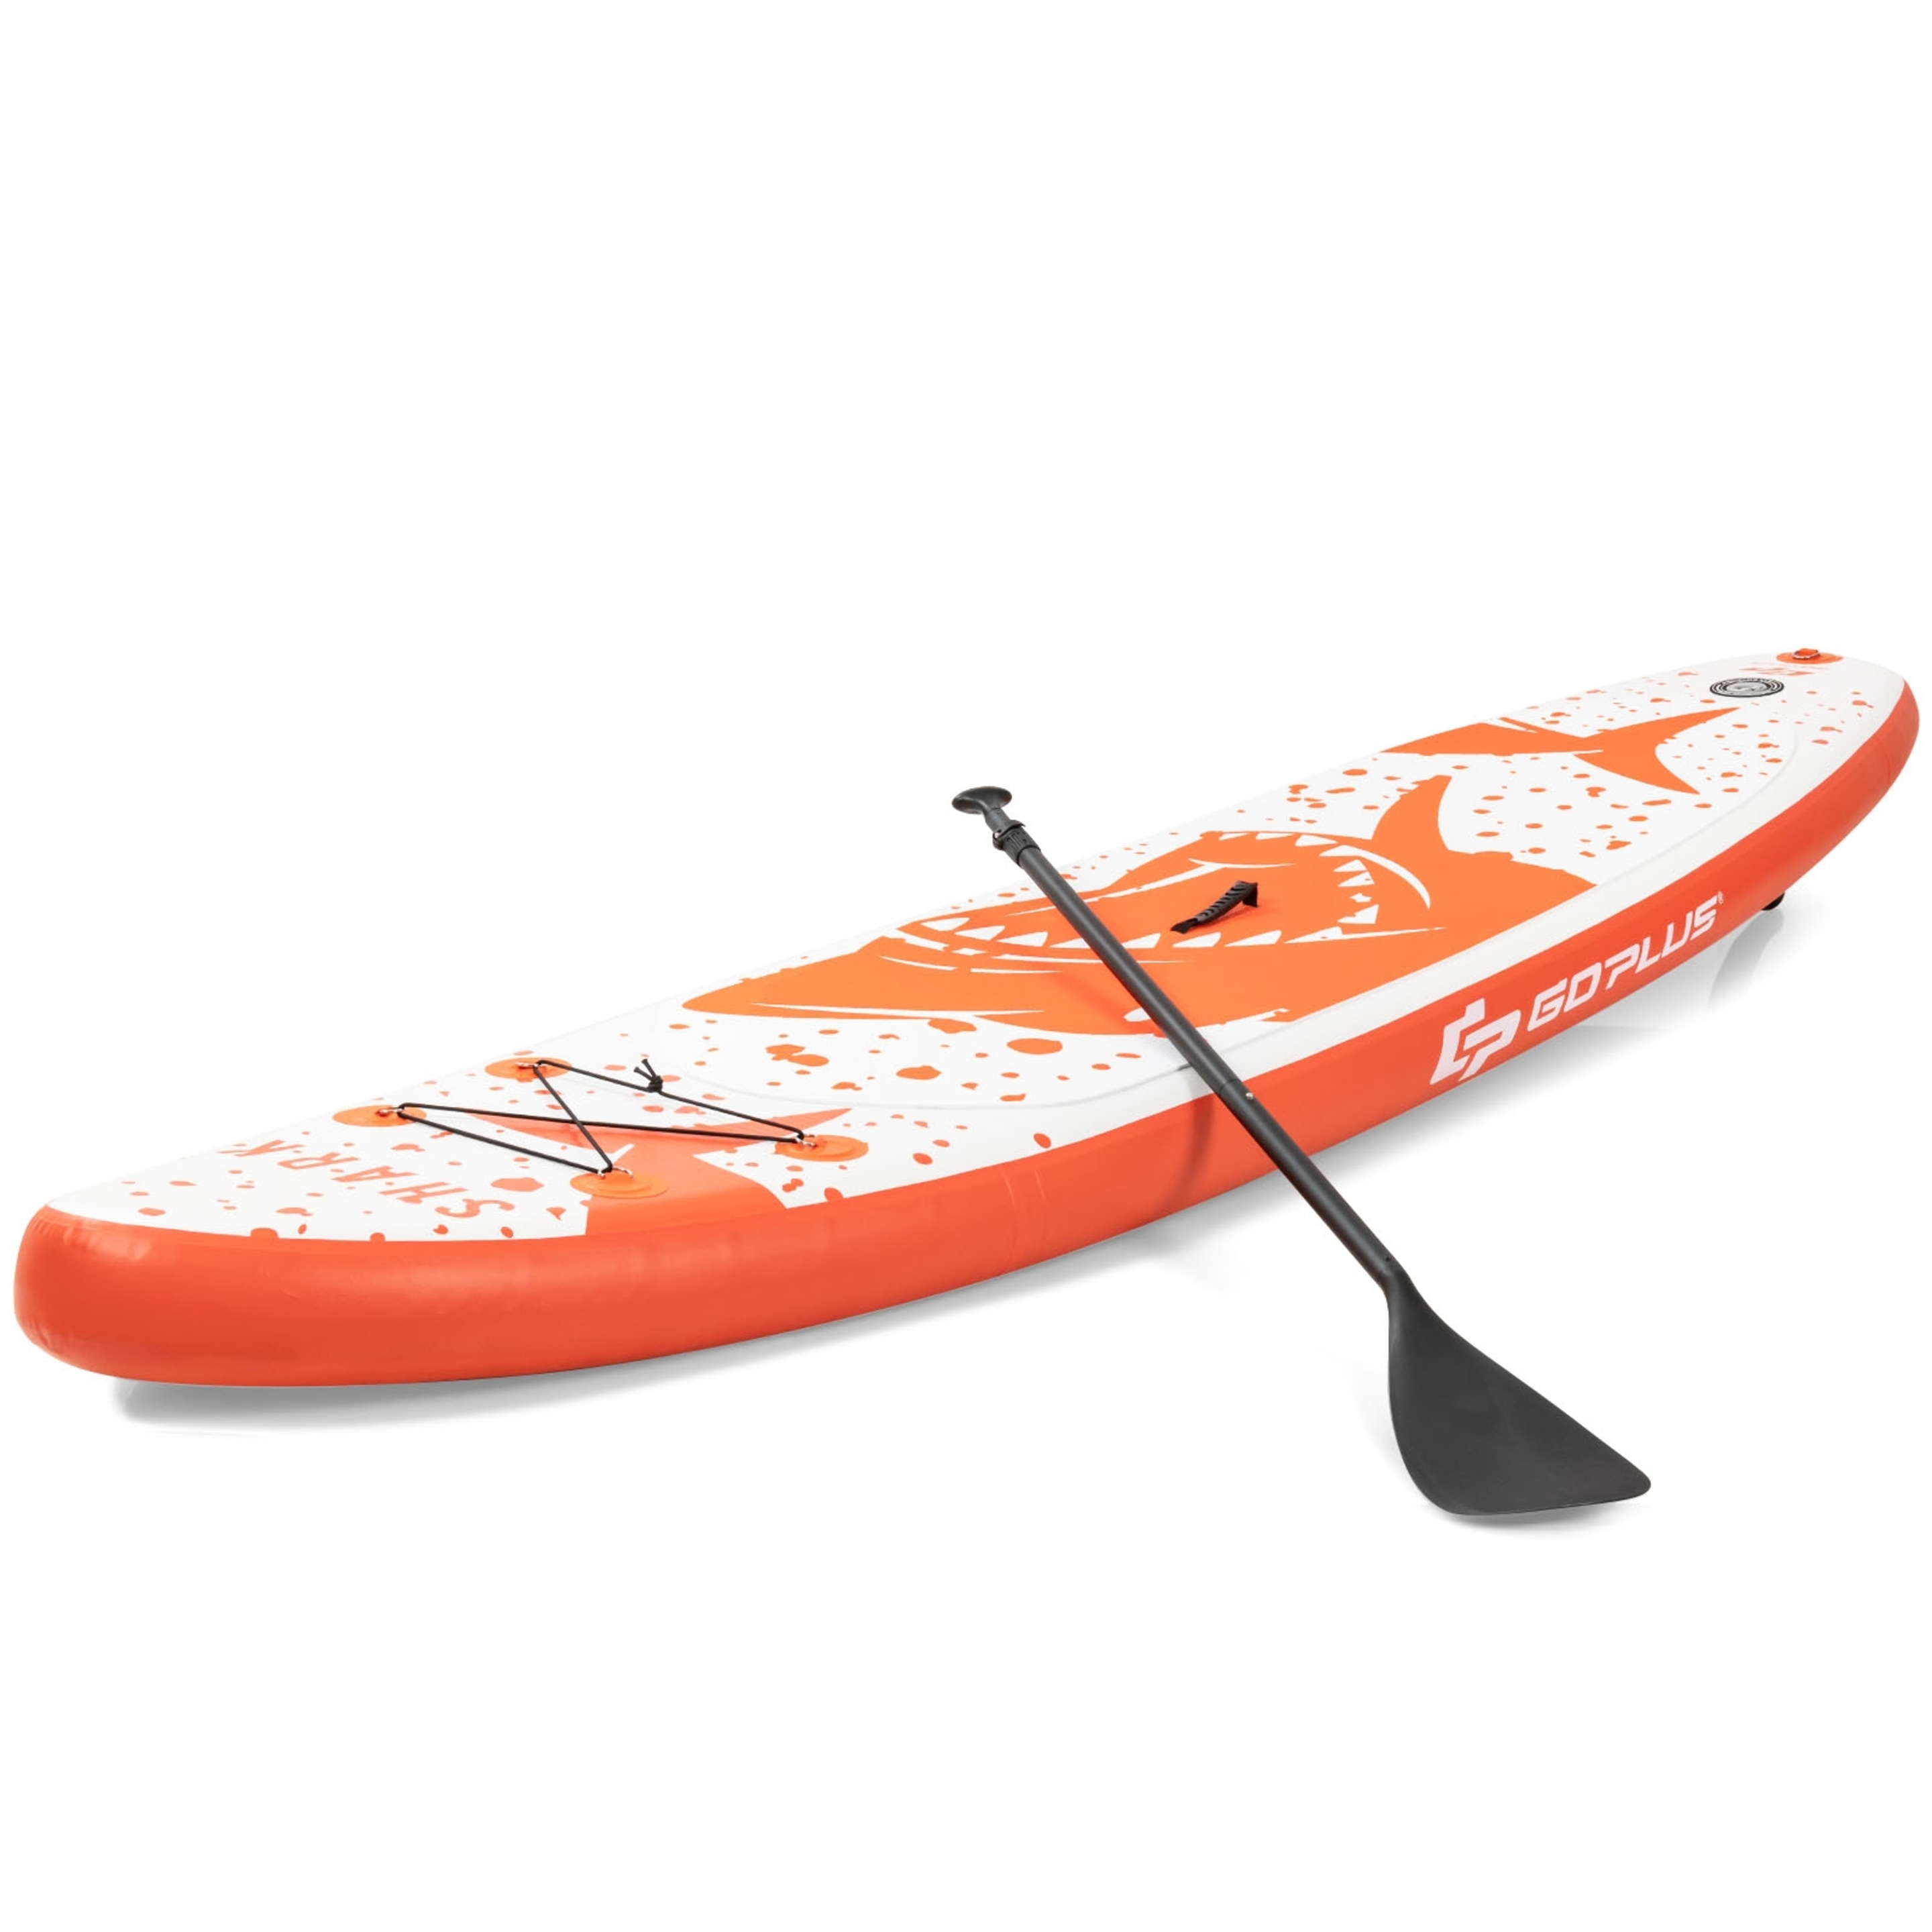 Costway Tabla De Paddle Inflable Sup L Tabla De Surf Con Aleta Removible